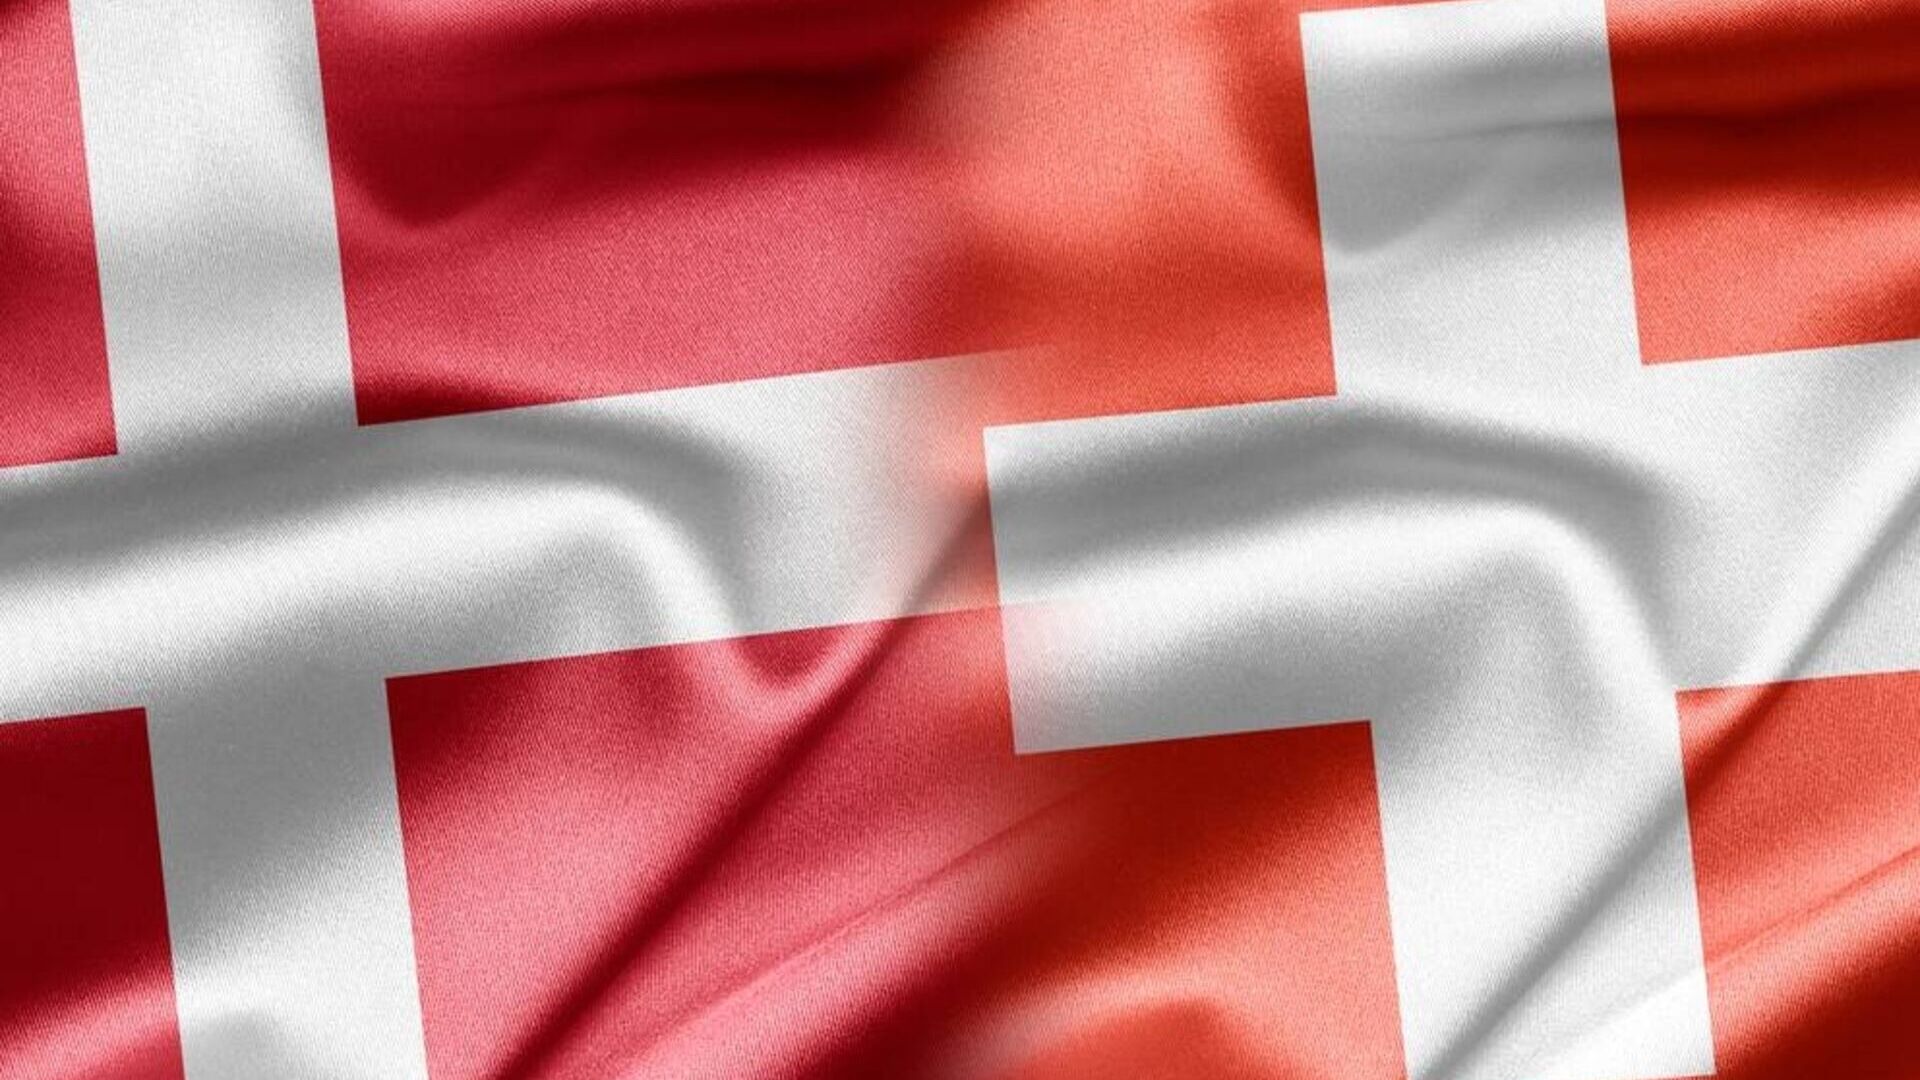 Svizzera Danimarca: una crasi grafica fra le bandiere della Confederazione e del Regno